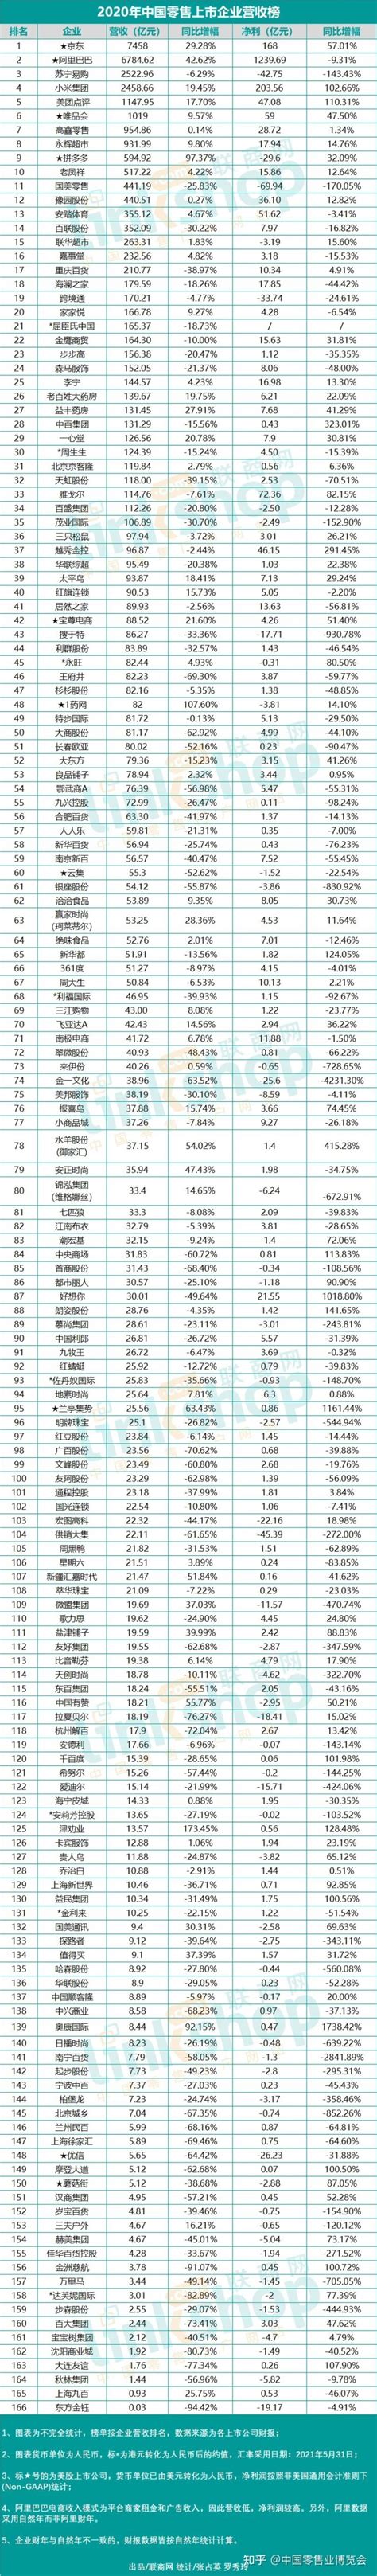 2018年湖北省高新区营业收入及总产值分析，特色优势产业集群竞争力持续提升「图」_趋势频道-华经情报网